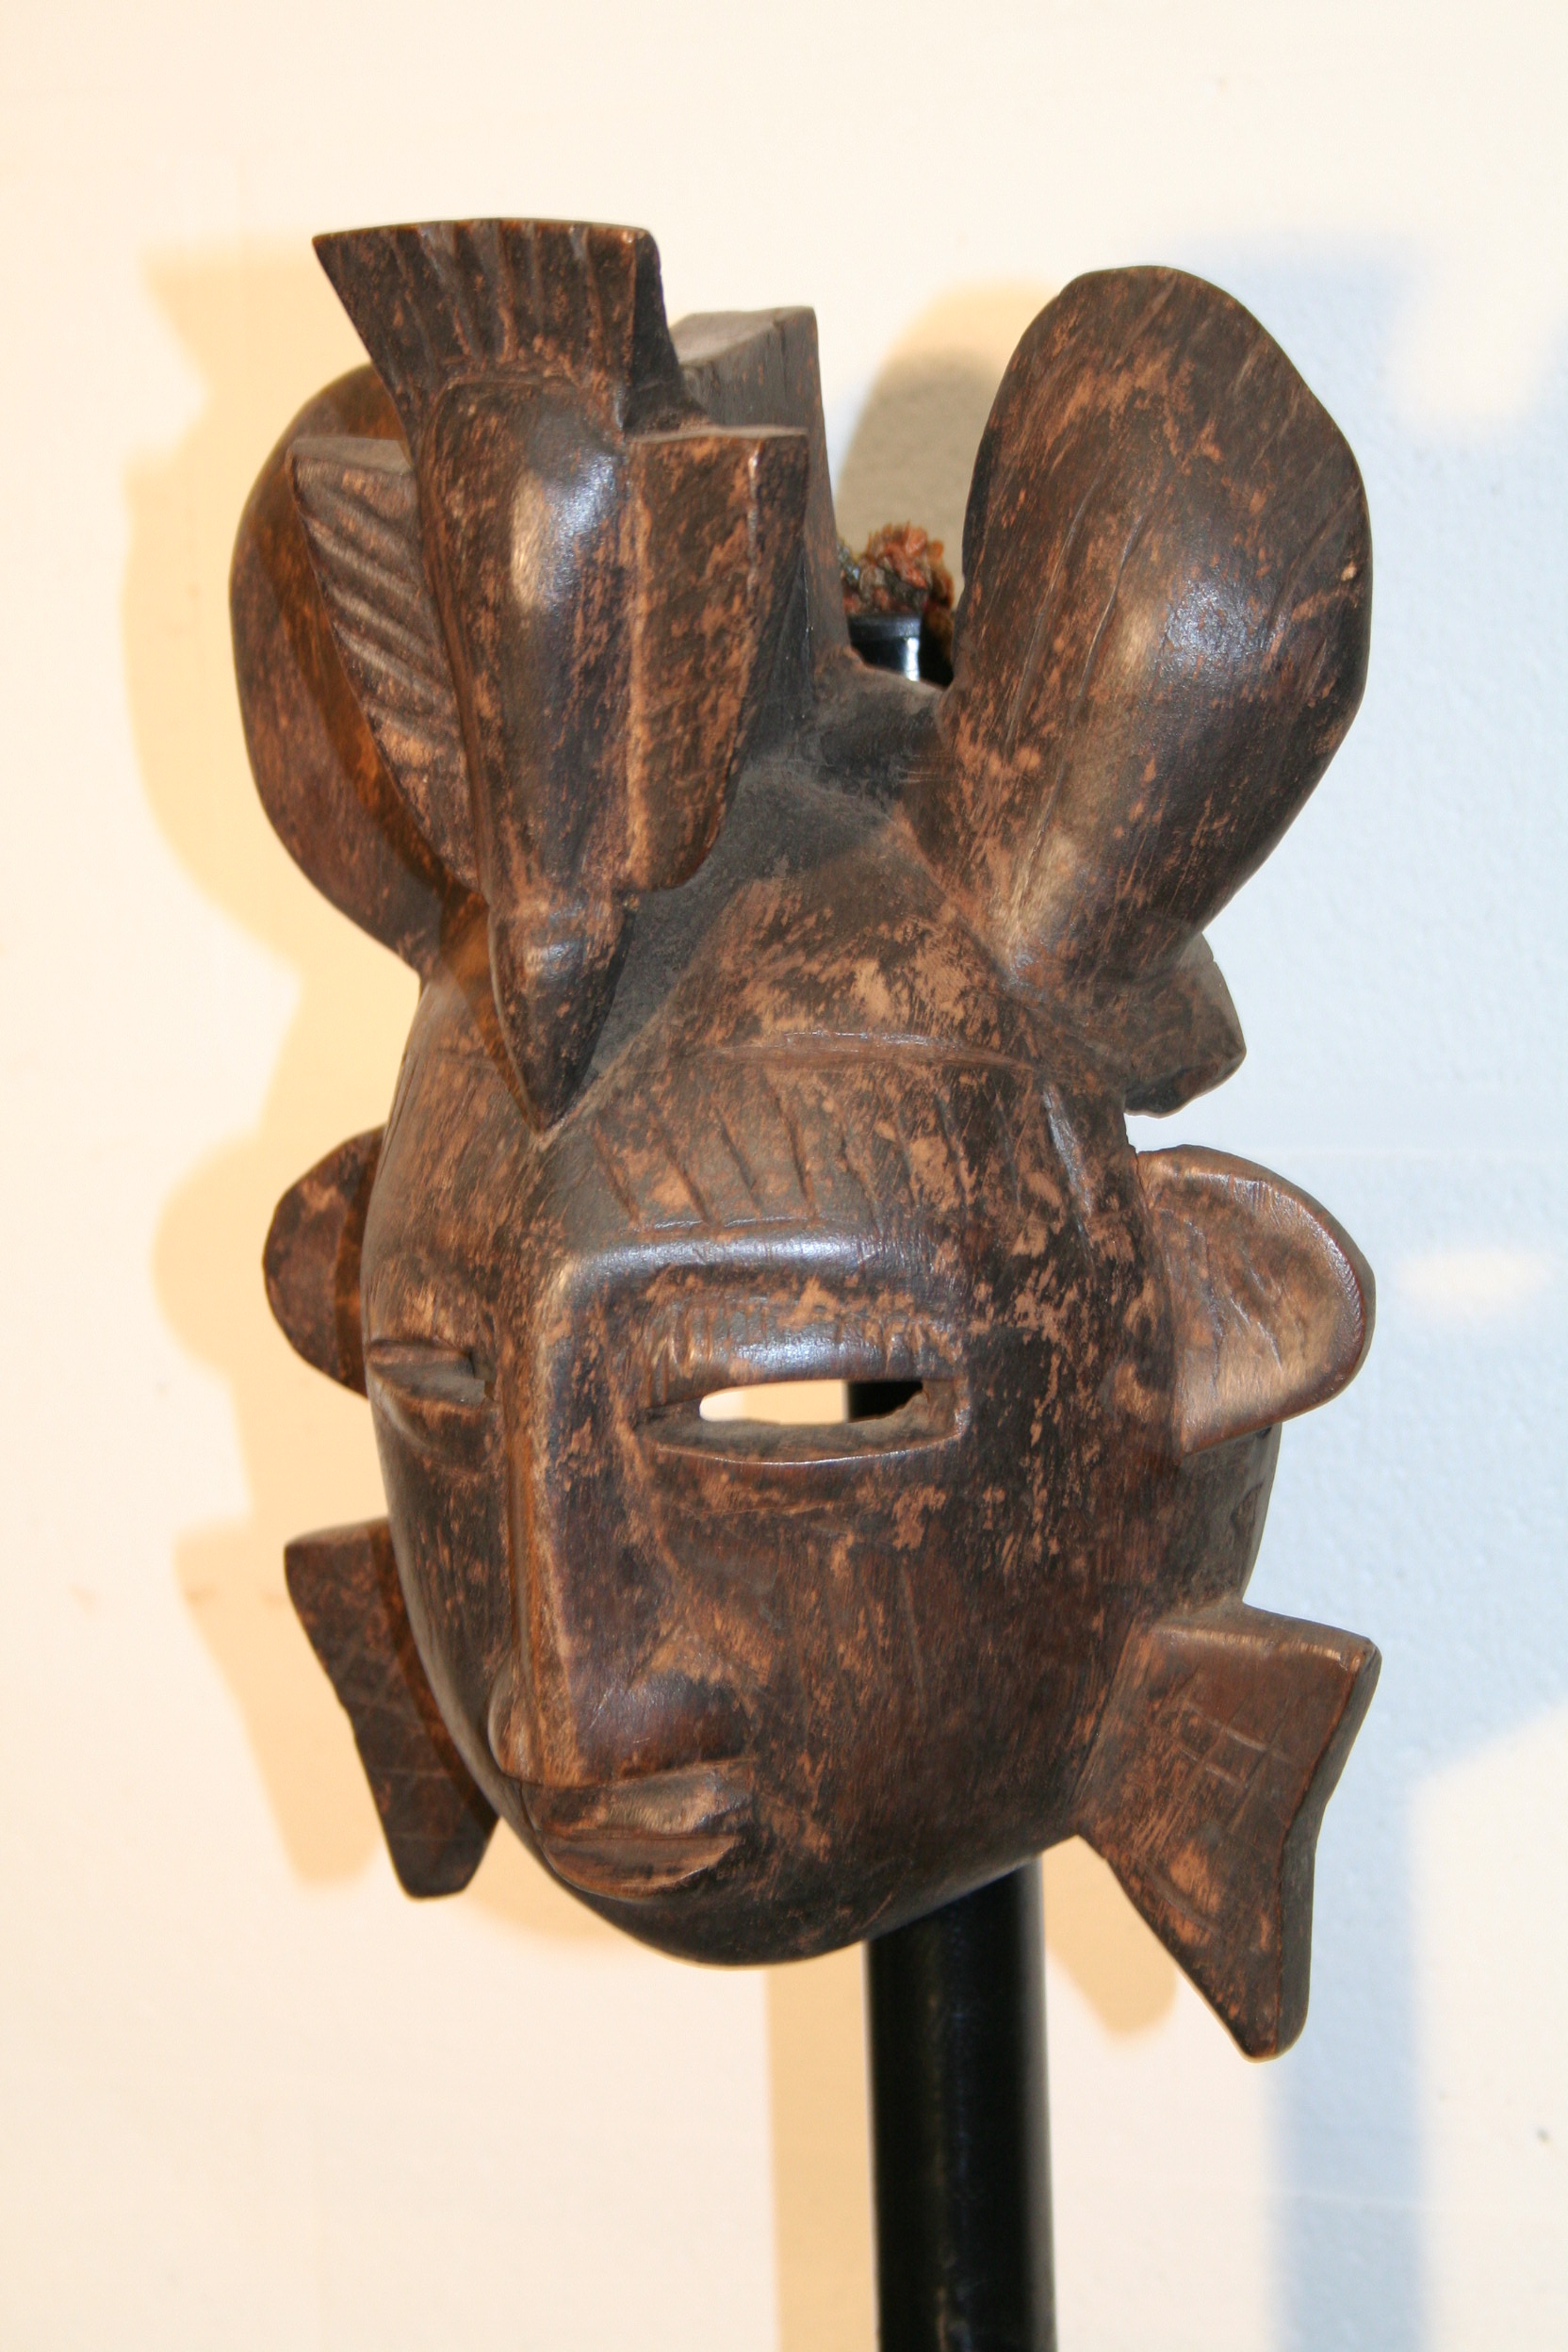 senoufo(masque), d`afrique : côte d